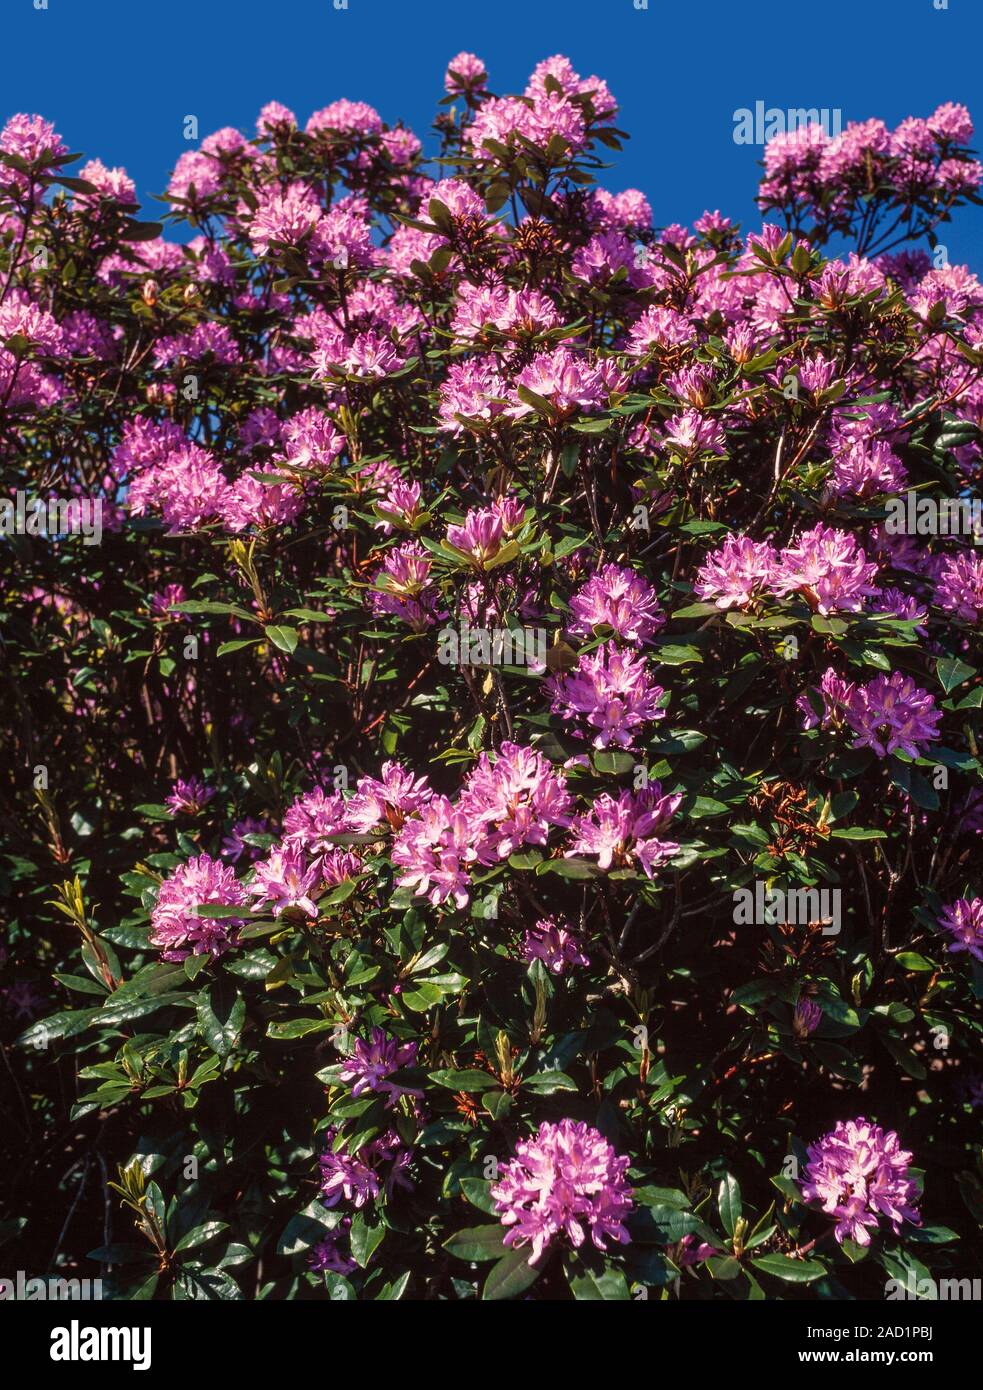 Arbusto di rododendro in fiore, rosa luminoso fioriture di magenta Foto Stock